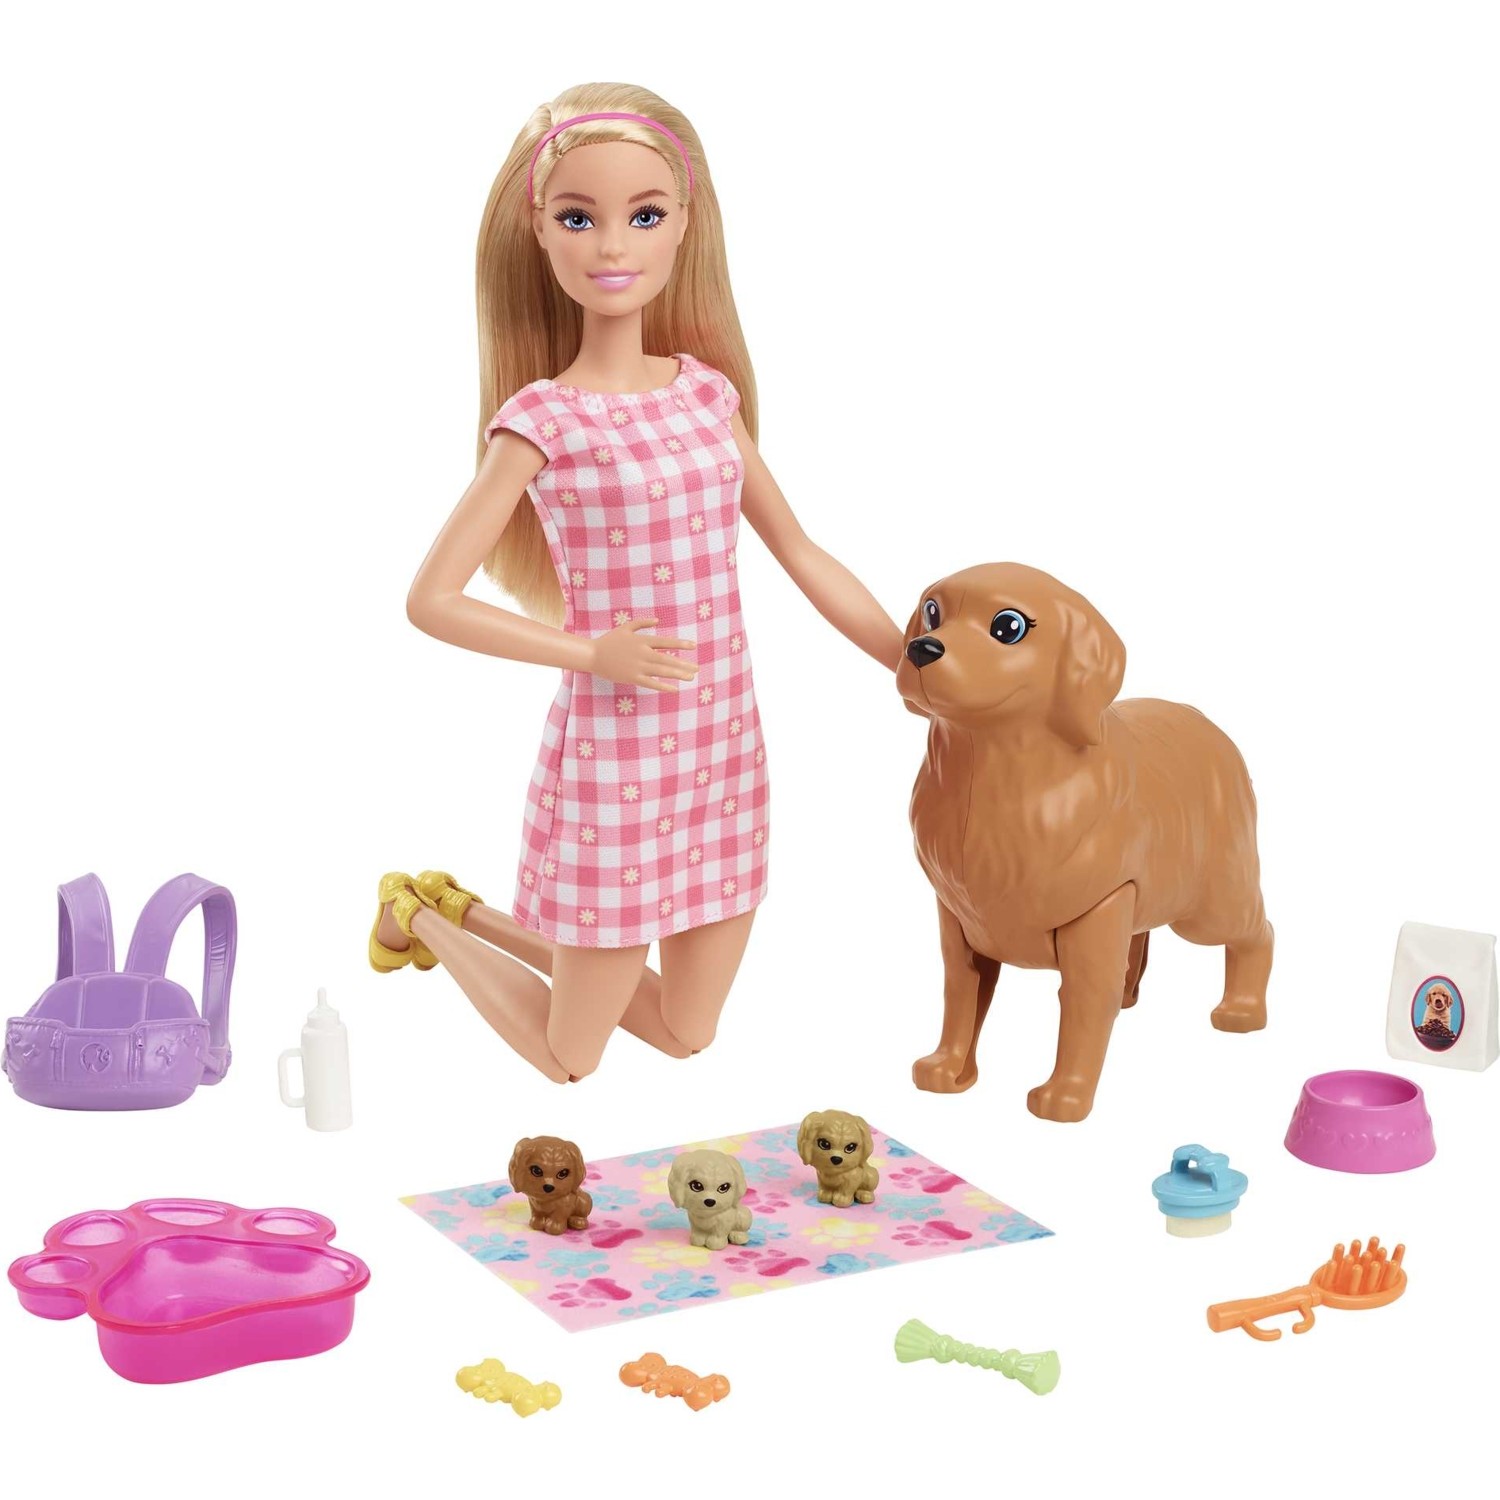 Игровой набор Barbie с питомцами Hck75 кукла барби с очками и сумочкой 29 см игровой набор барби с аксессуарами интерактивная игрушка кукла